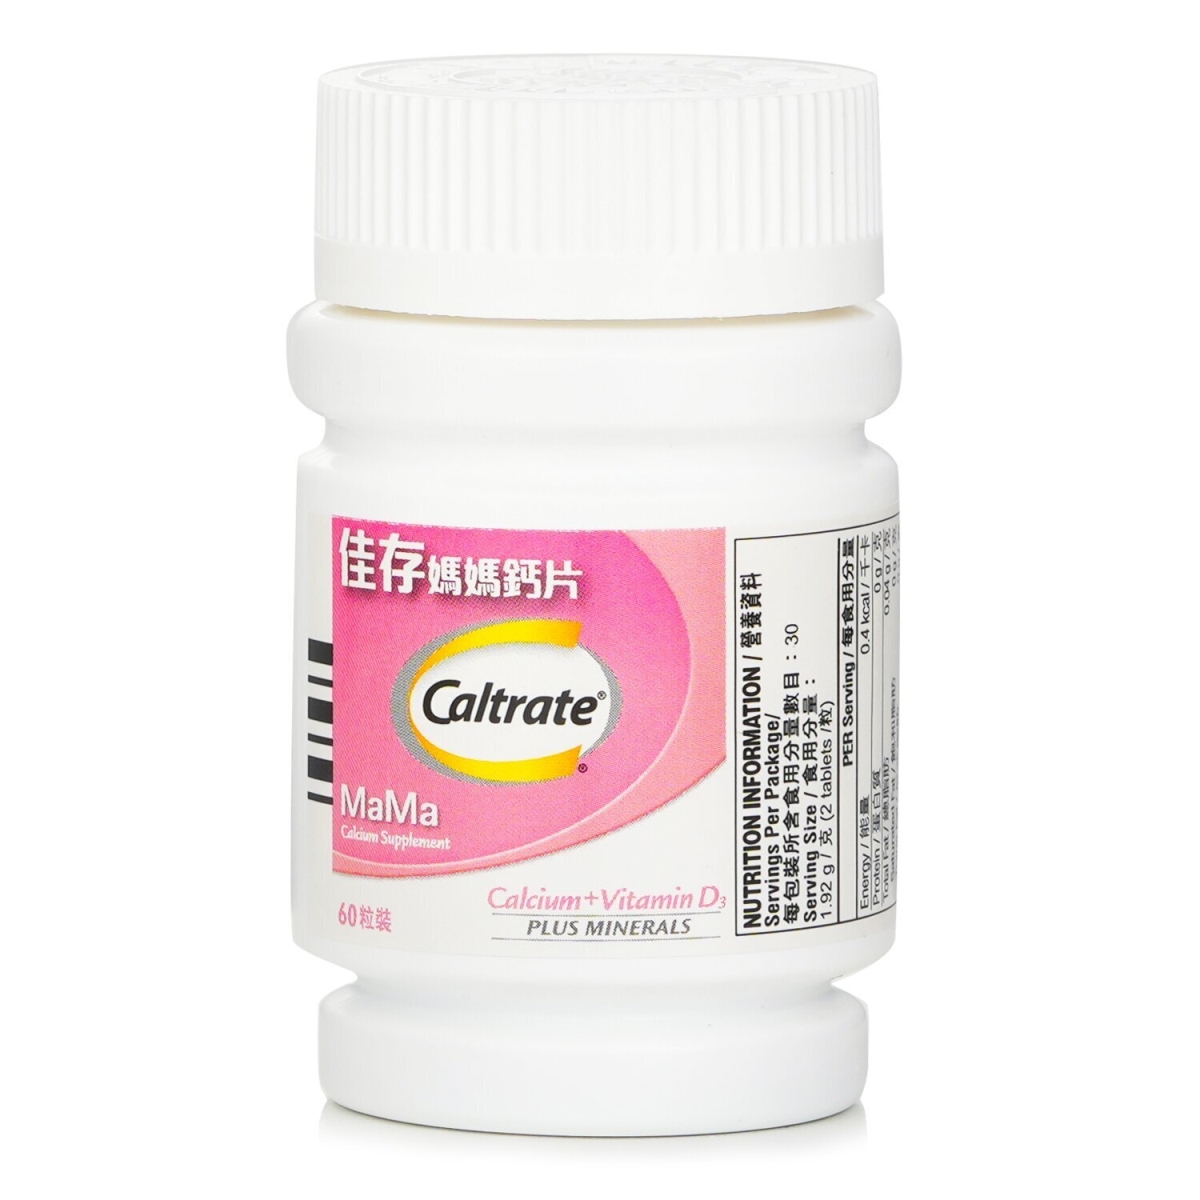 303326 MaMa Calcium Supplement, 60 Capsules -  Caltrate